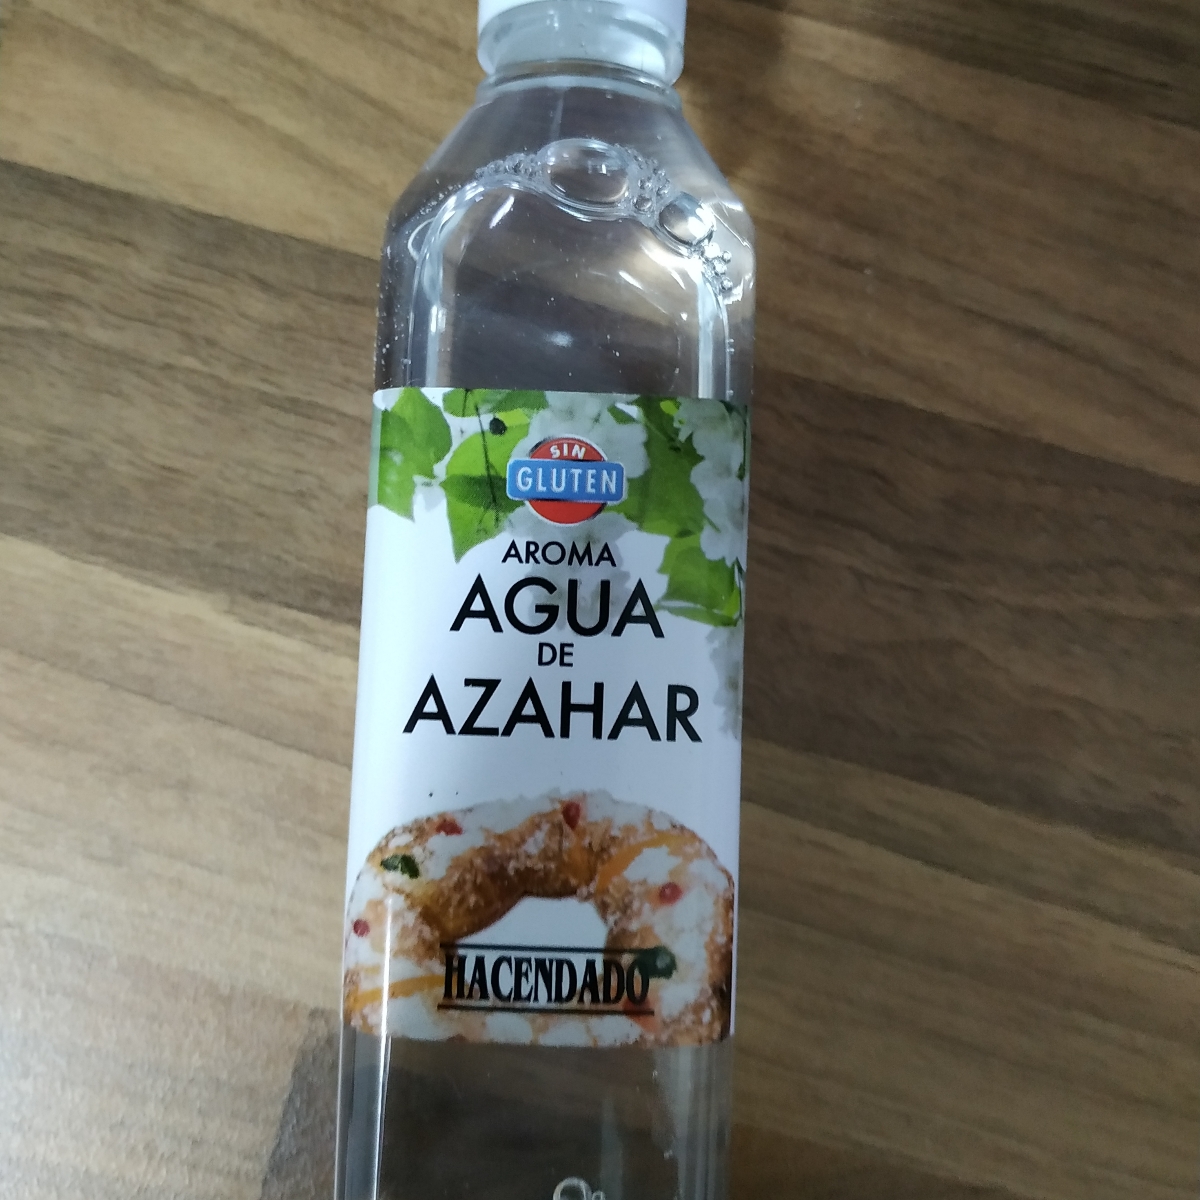 Hacendado Agua de azahar Reviews